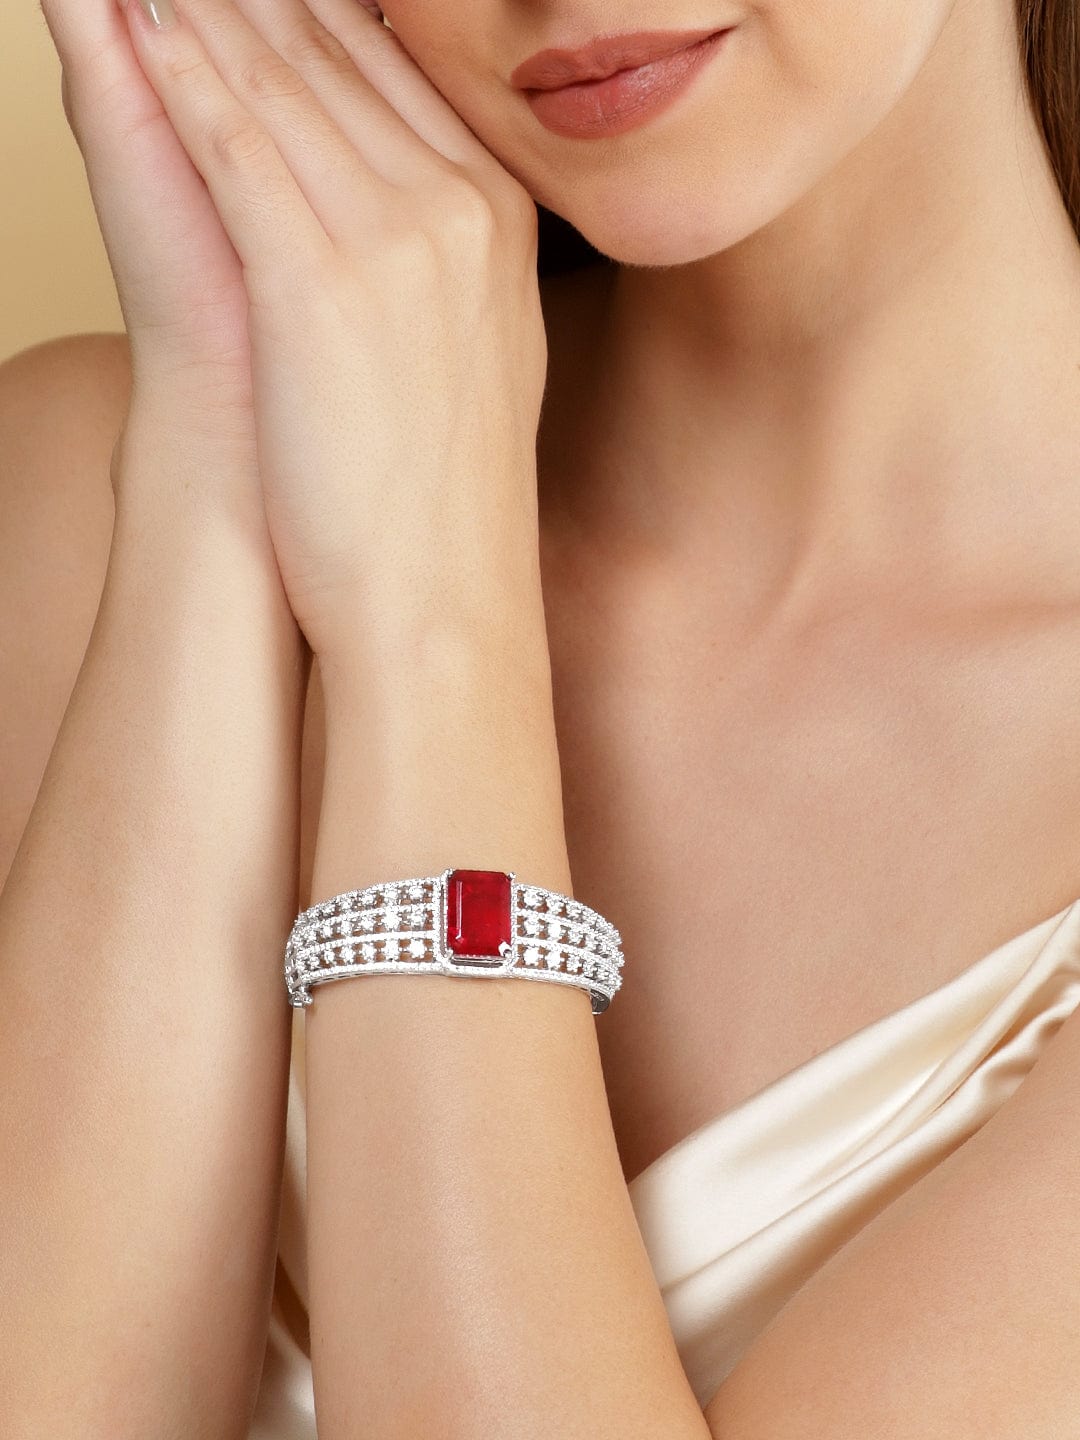 Share more than 66 fake ruby bracelet super hot - 3tdesign.edu.vn